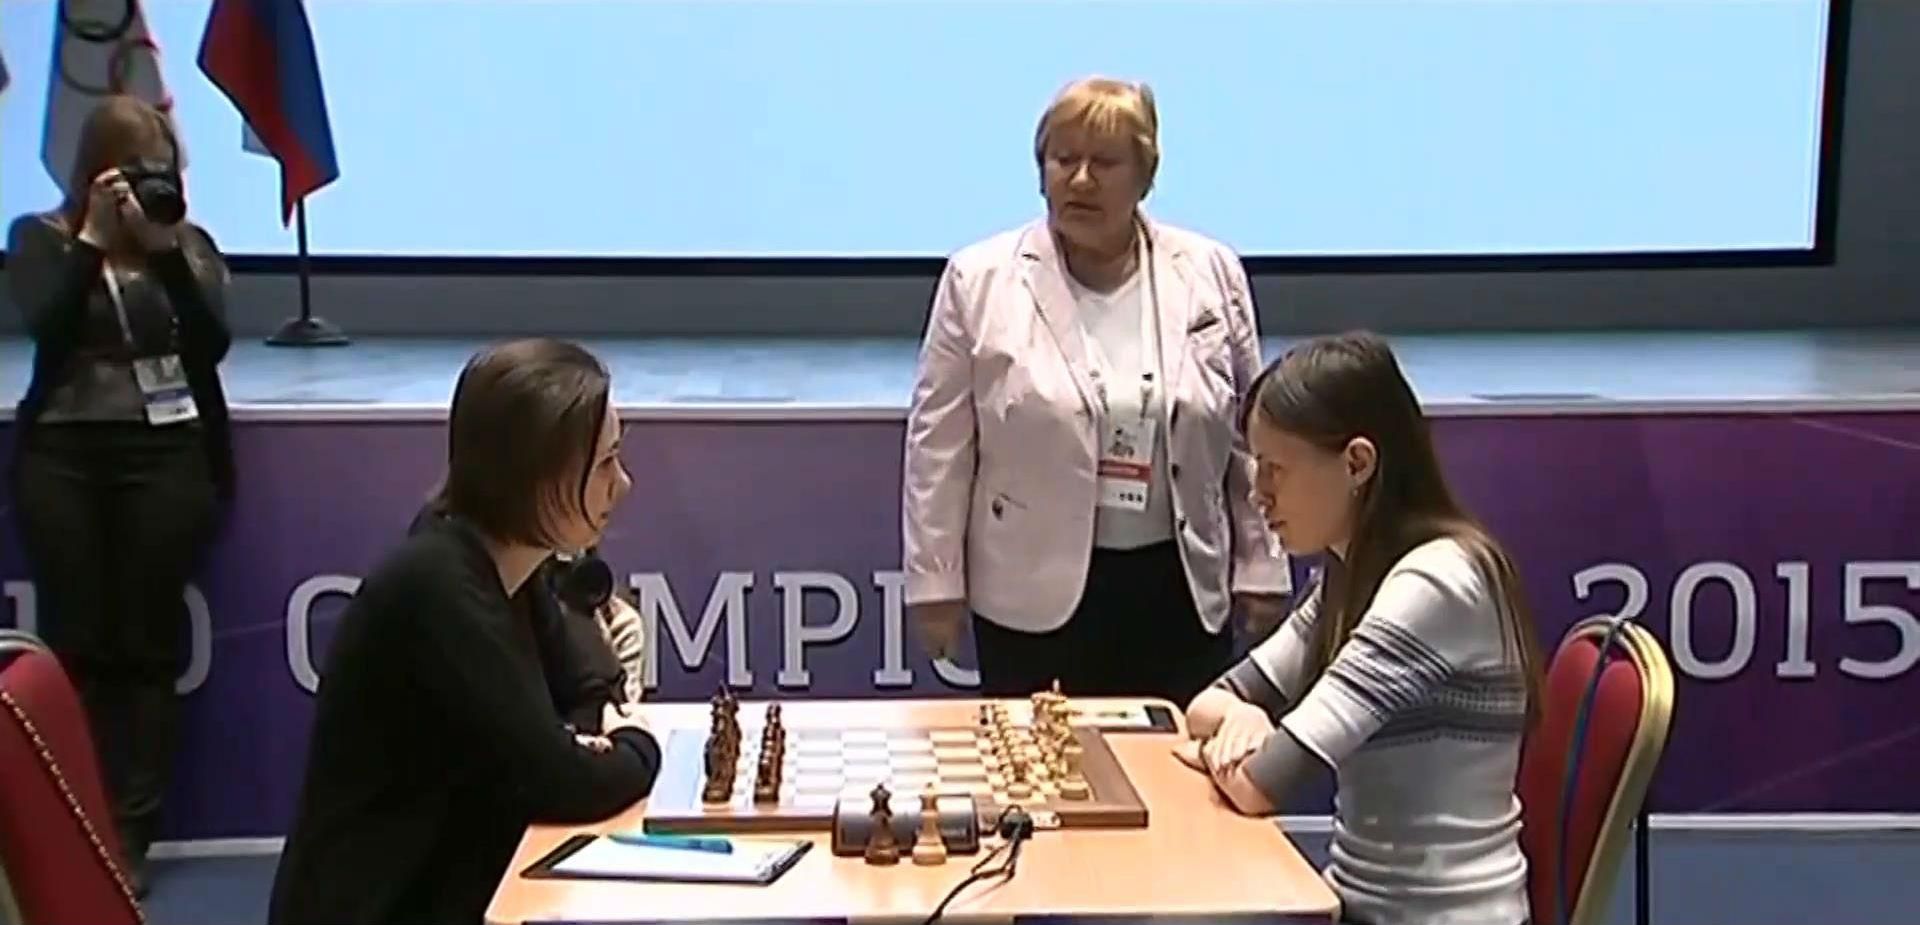 Шахматы. Музычук свела вничью третью партию финала чемпионата мира